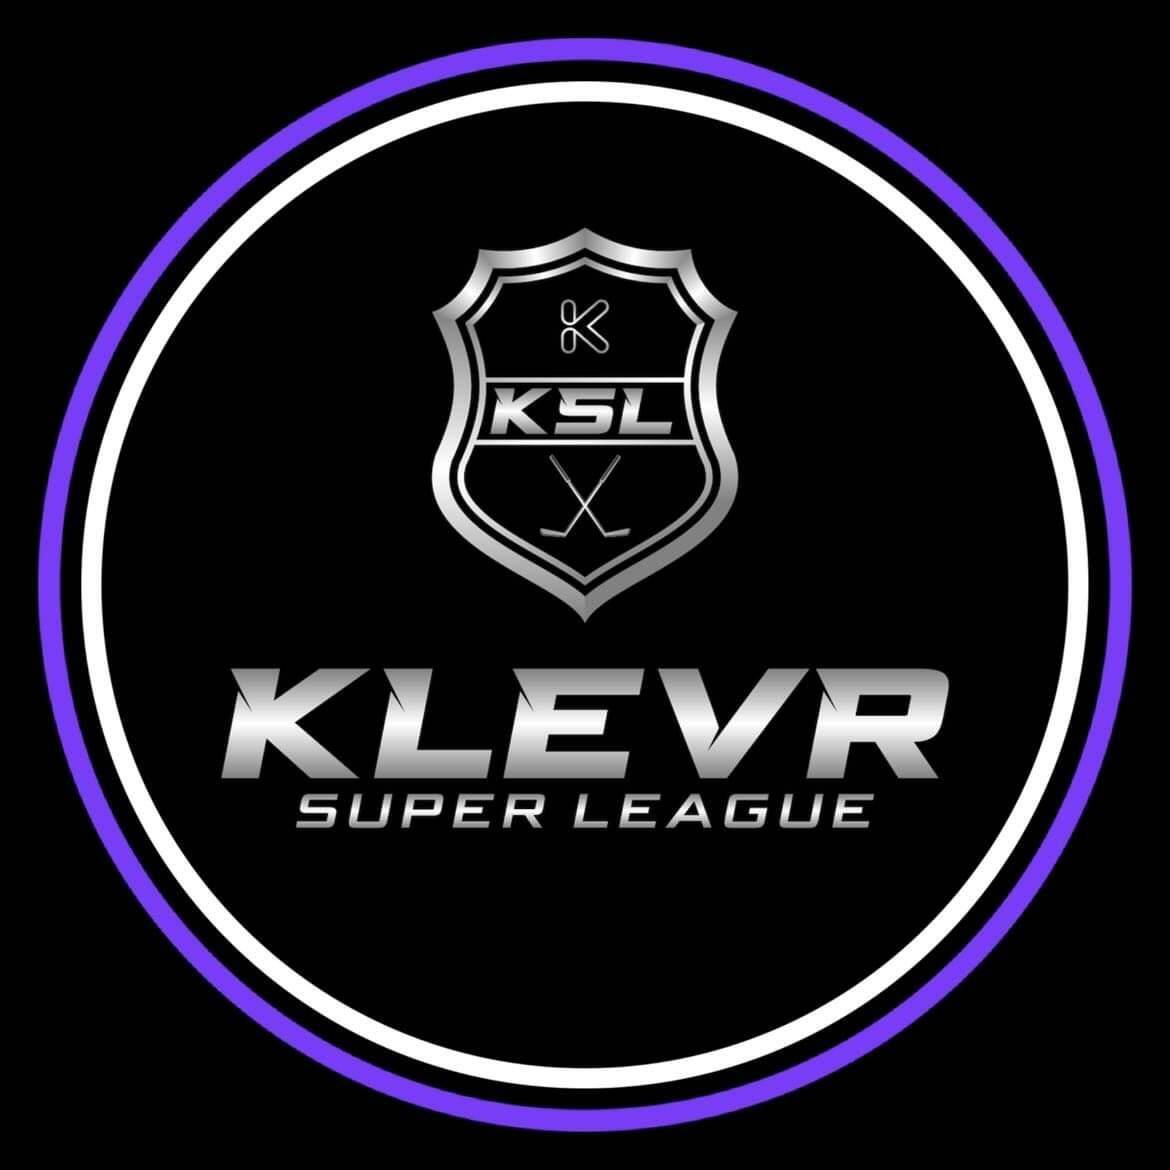 Klevr Super League